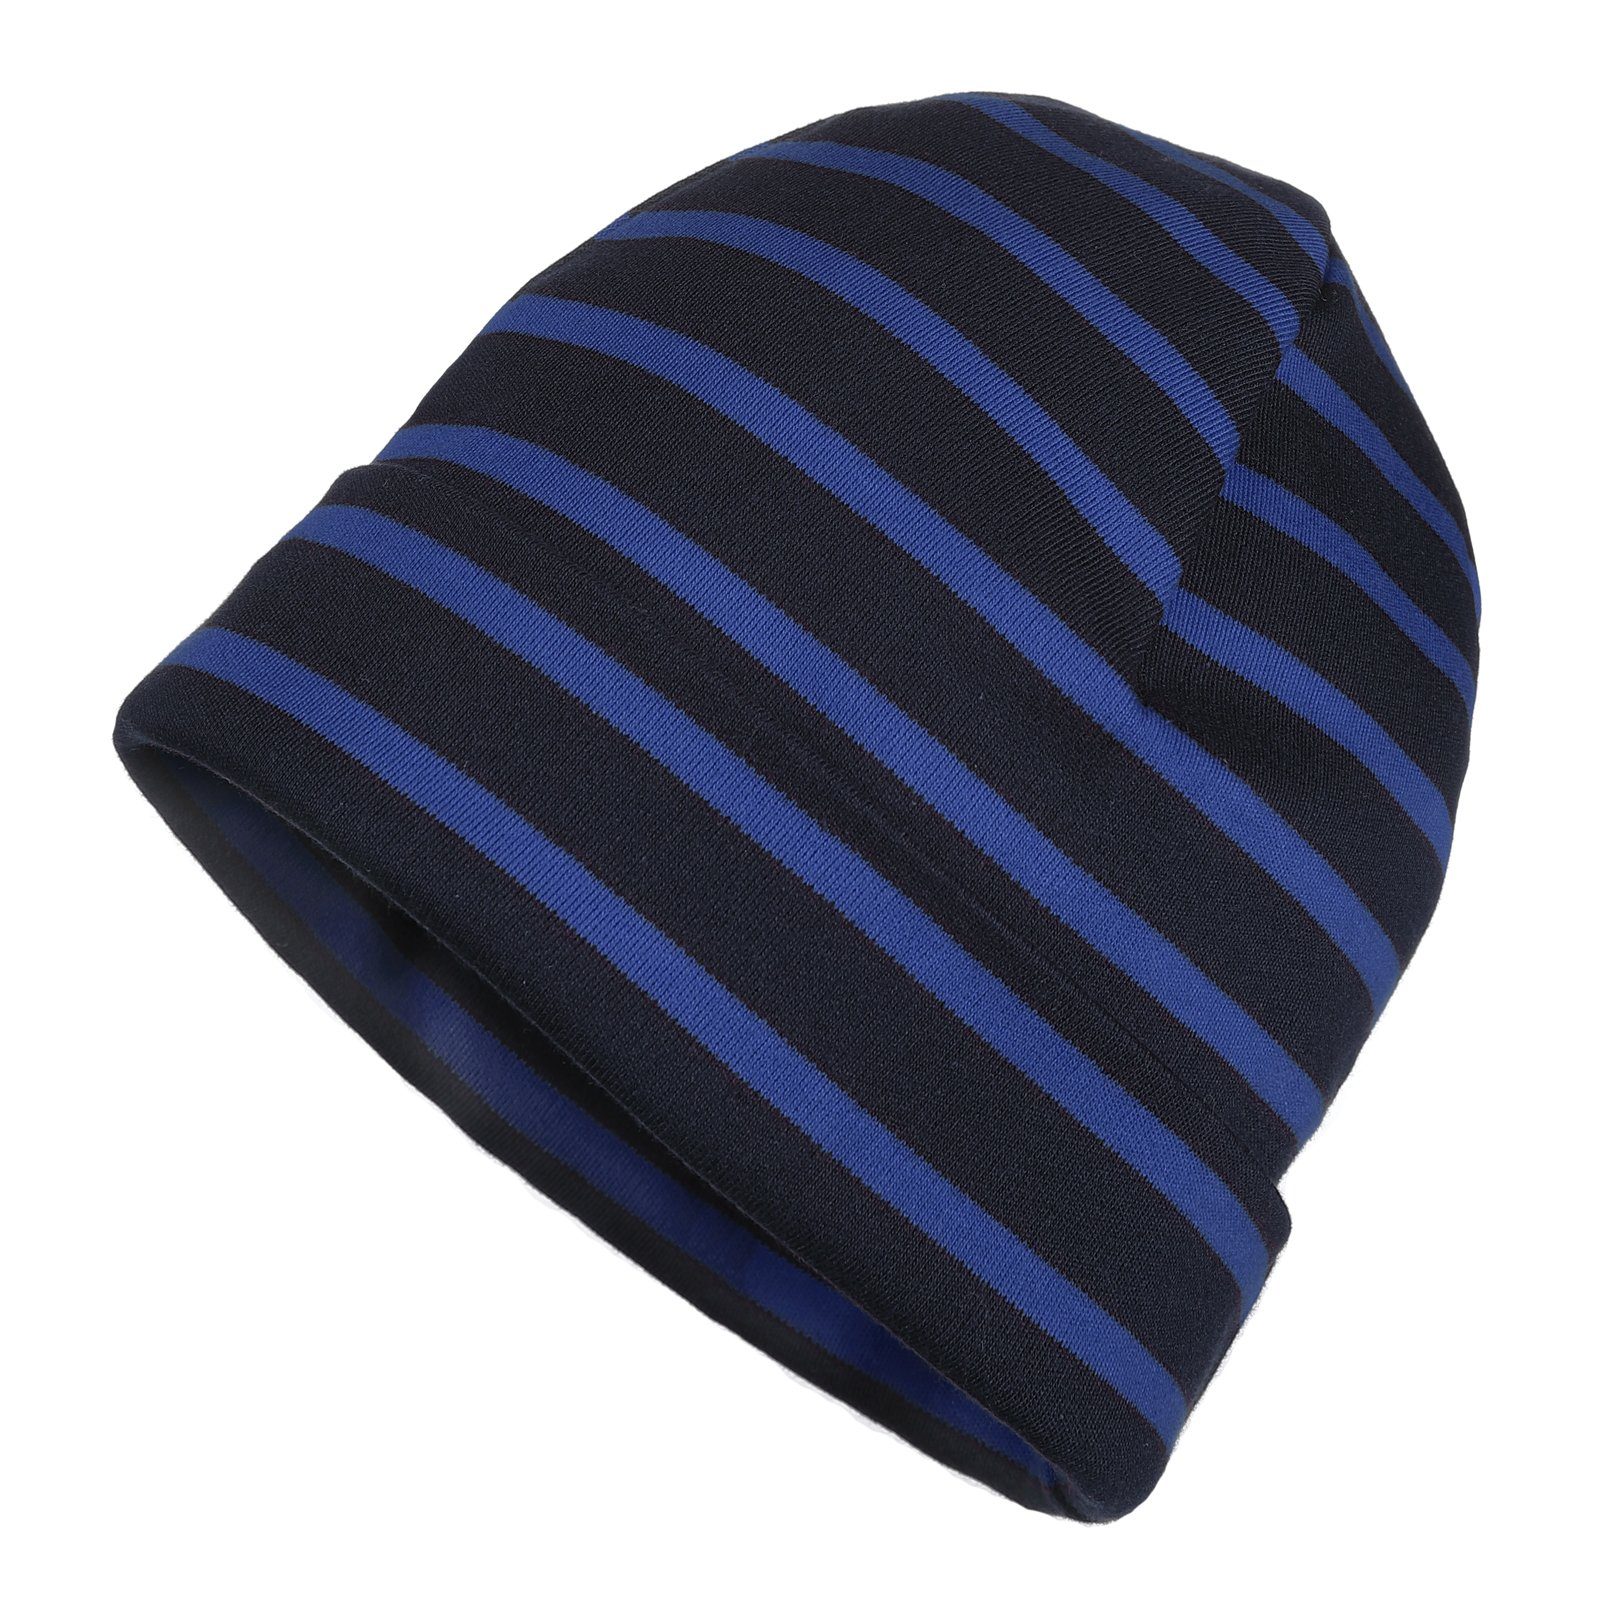 modAS Strickmütze Unisex Mütze Streifen für Kinder & Erwachsene - Ringelmütze Baumwolle (76) blau / royal | Strickmützen